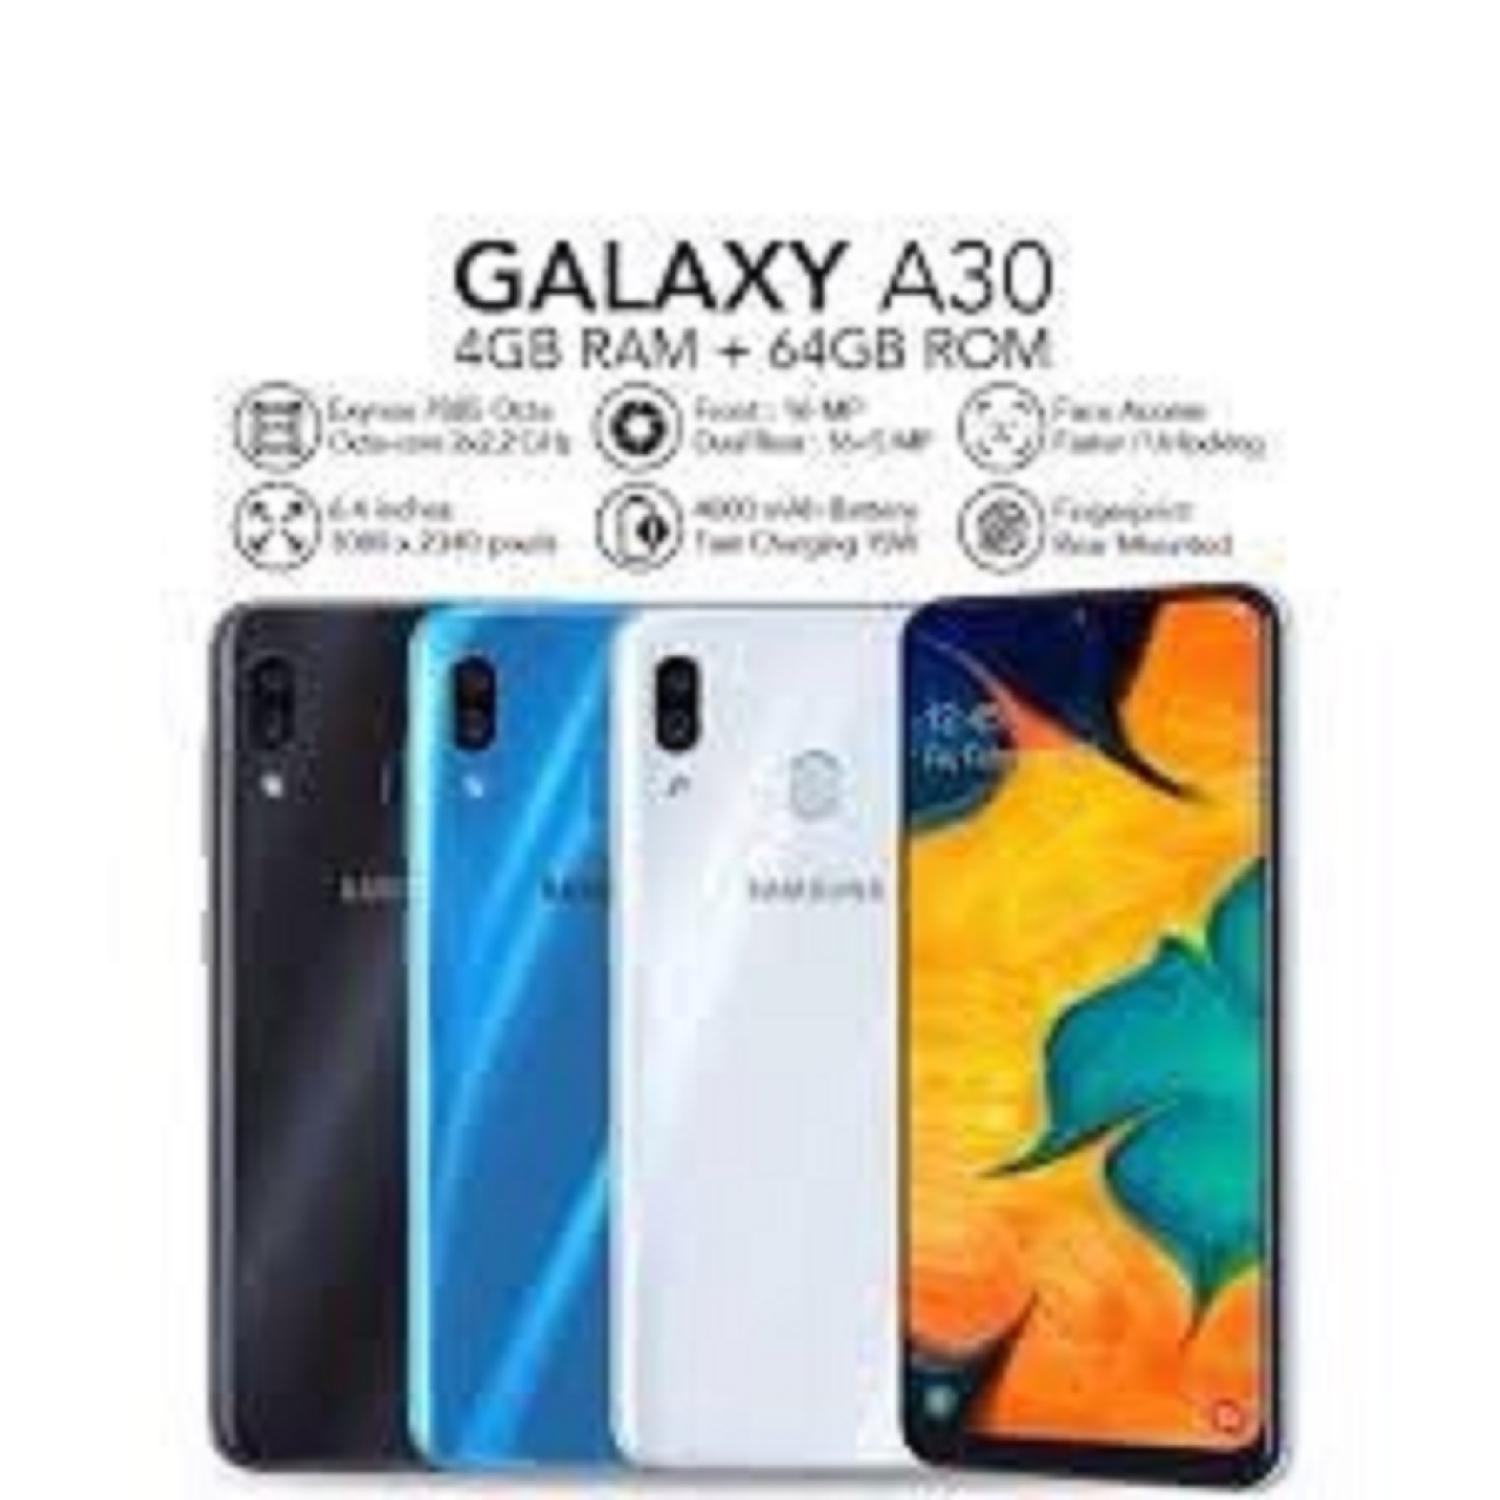 điện thoại Samsung Galaxy A30 2sim (4GB/64GB) – Chiến PUBG/Free Fire mượt/ Lướt Tiktok zɑlo Fb Youtube chất – BAO ĐỔI MIỄN PHÍ TẠI NHÀ